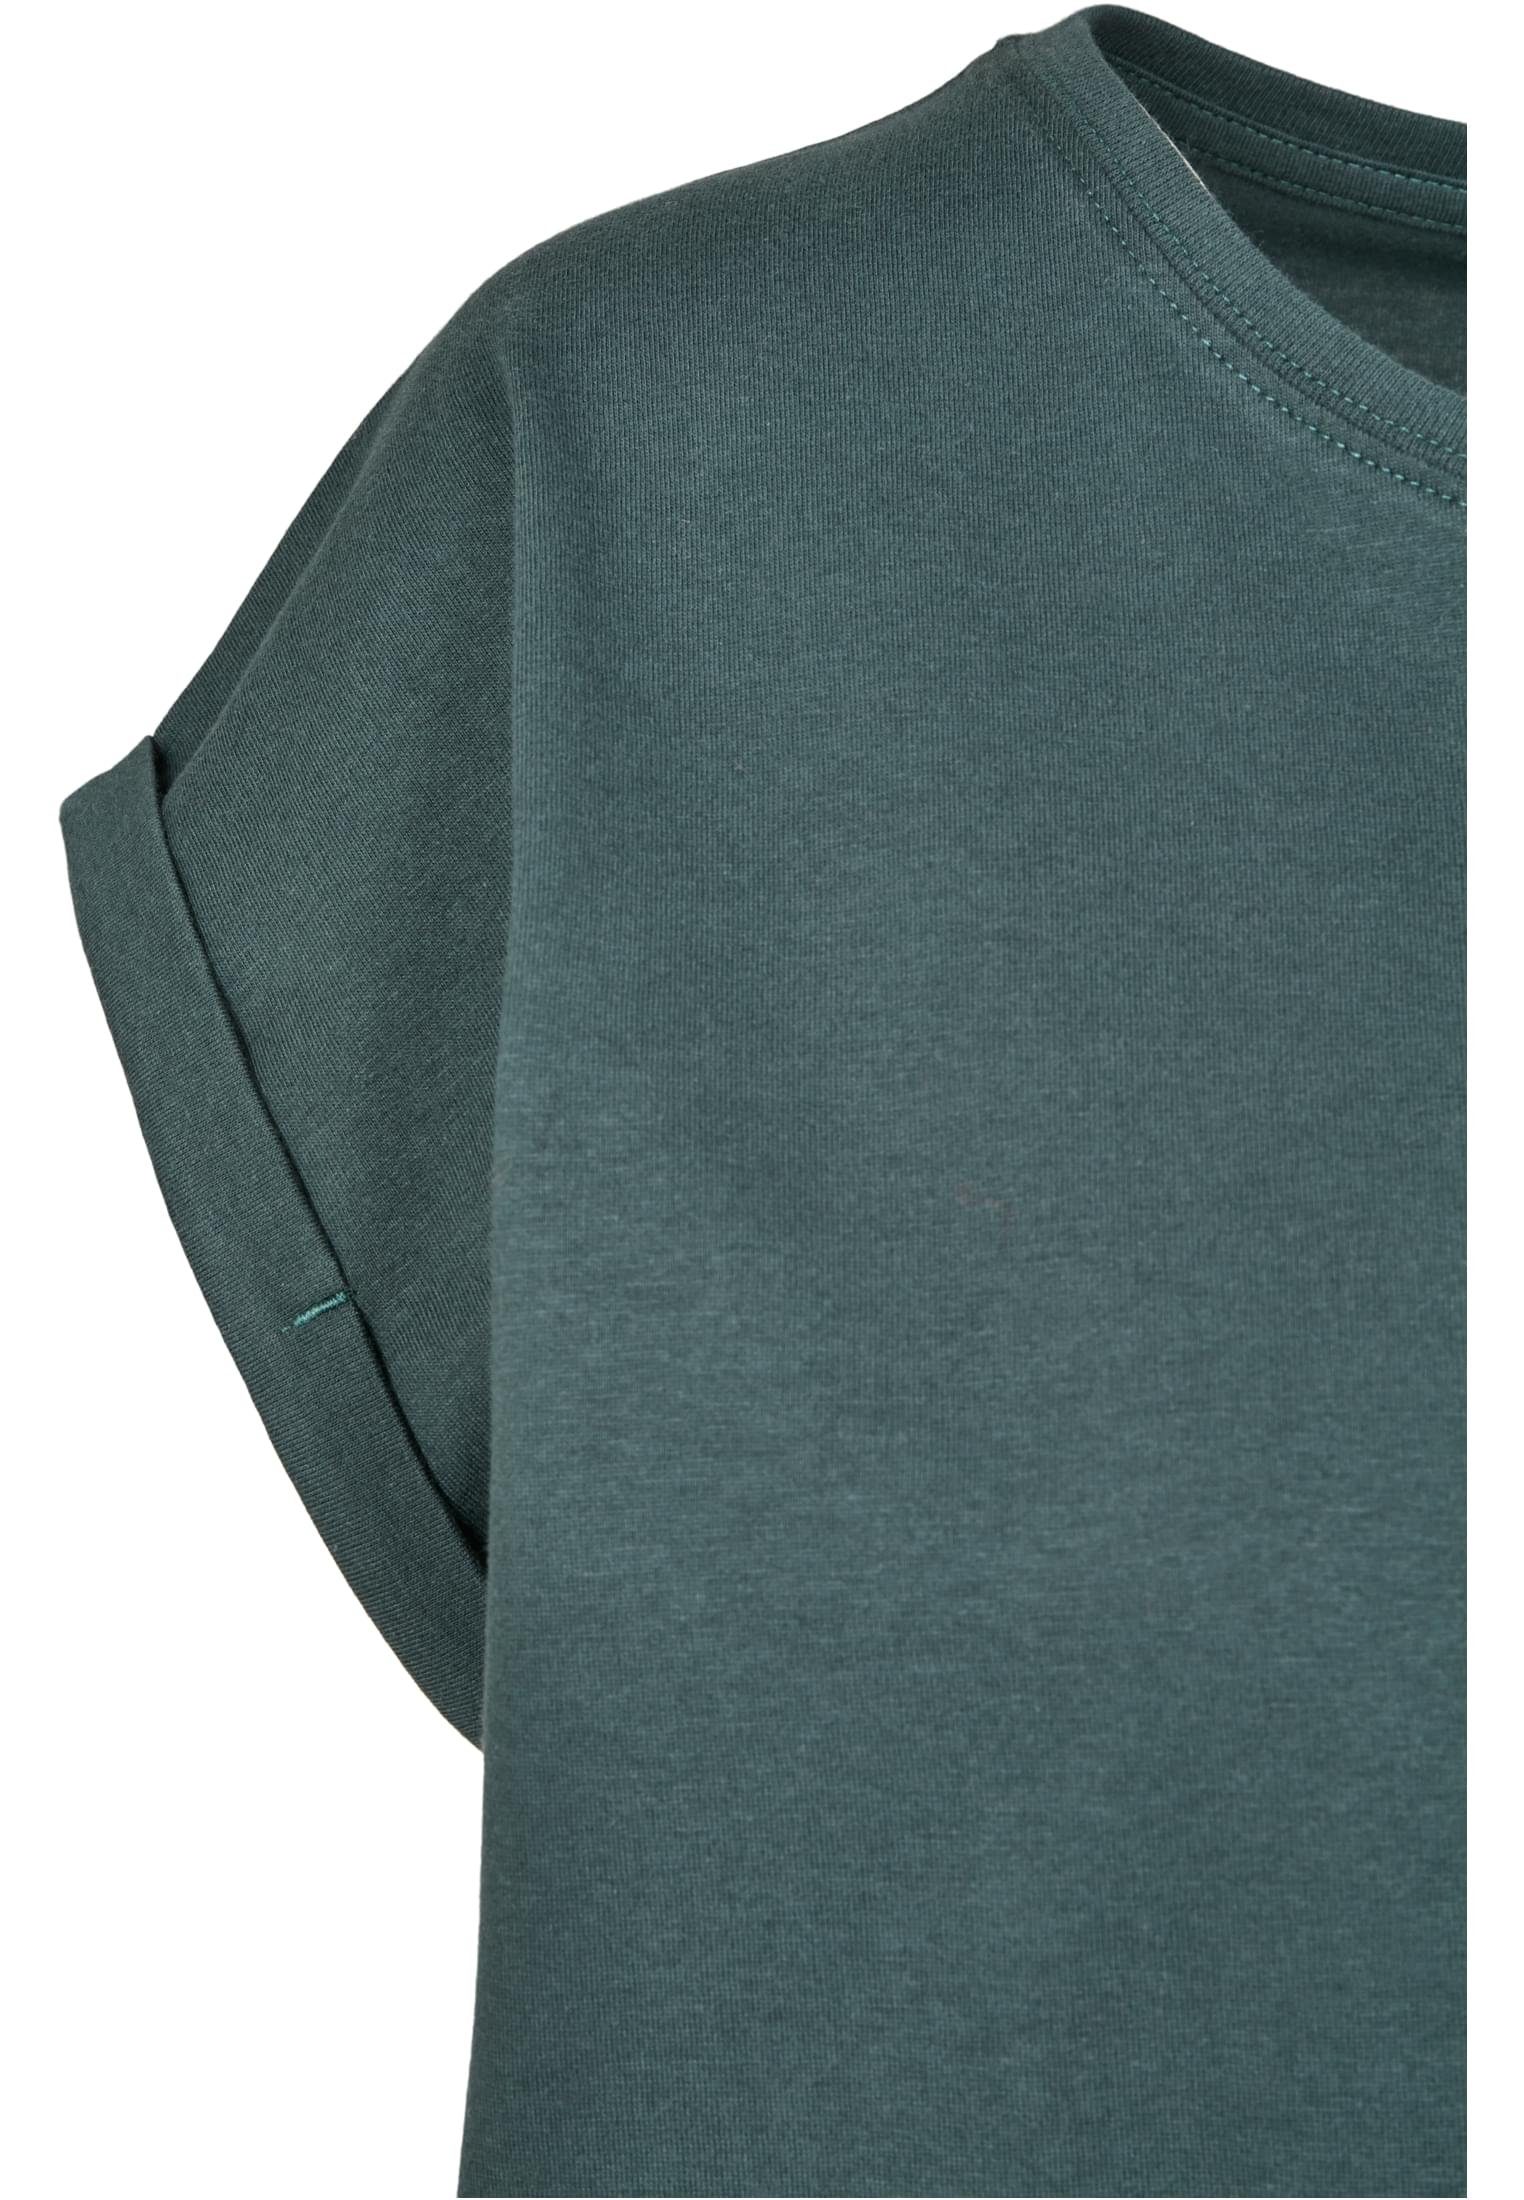 CLASSICS URBAN TB771 T-Shirt bottlegreen Shoulder Extended